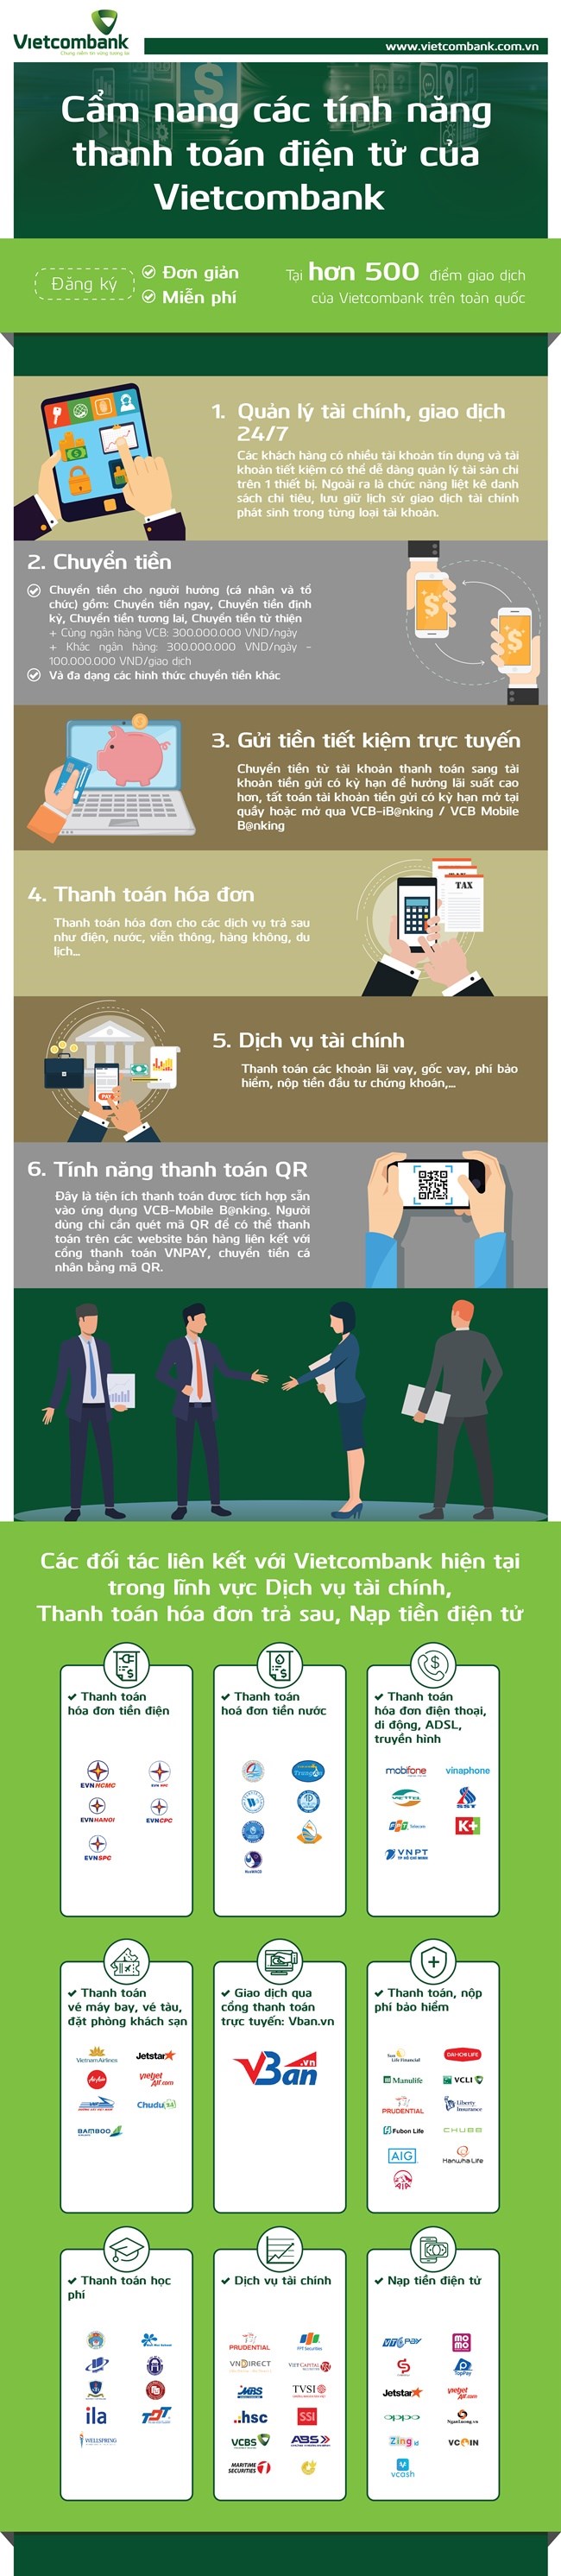 [Infographic] Cẩm nang các tính năng thanh toán điện tử của Vietcombank - Ảnh 1